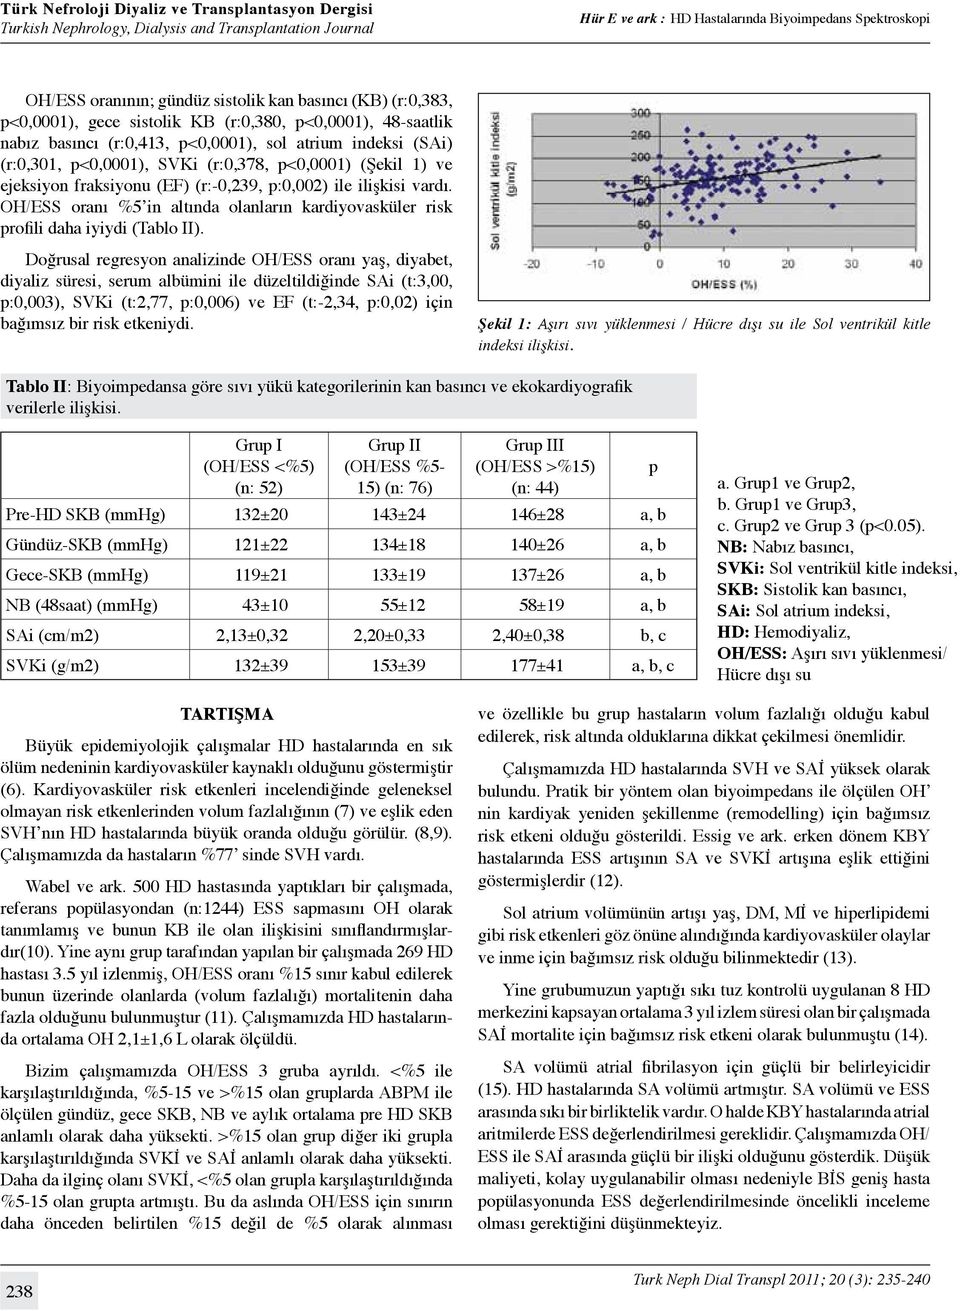 OH/ESS oranı %5 in altında olanların kardiyovasküler risk profili daha iyiydi (Tablo II).